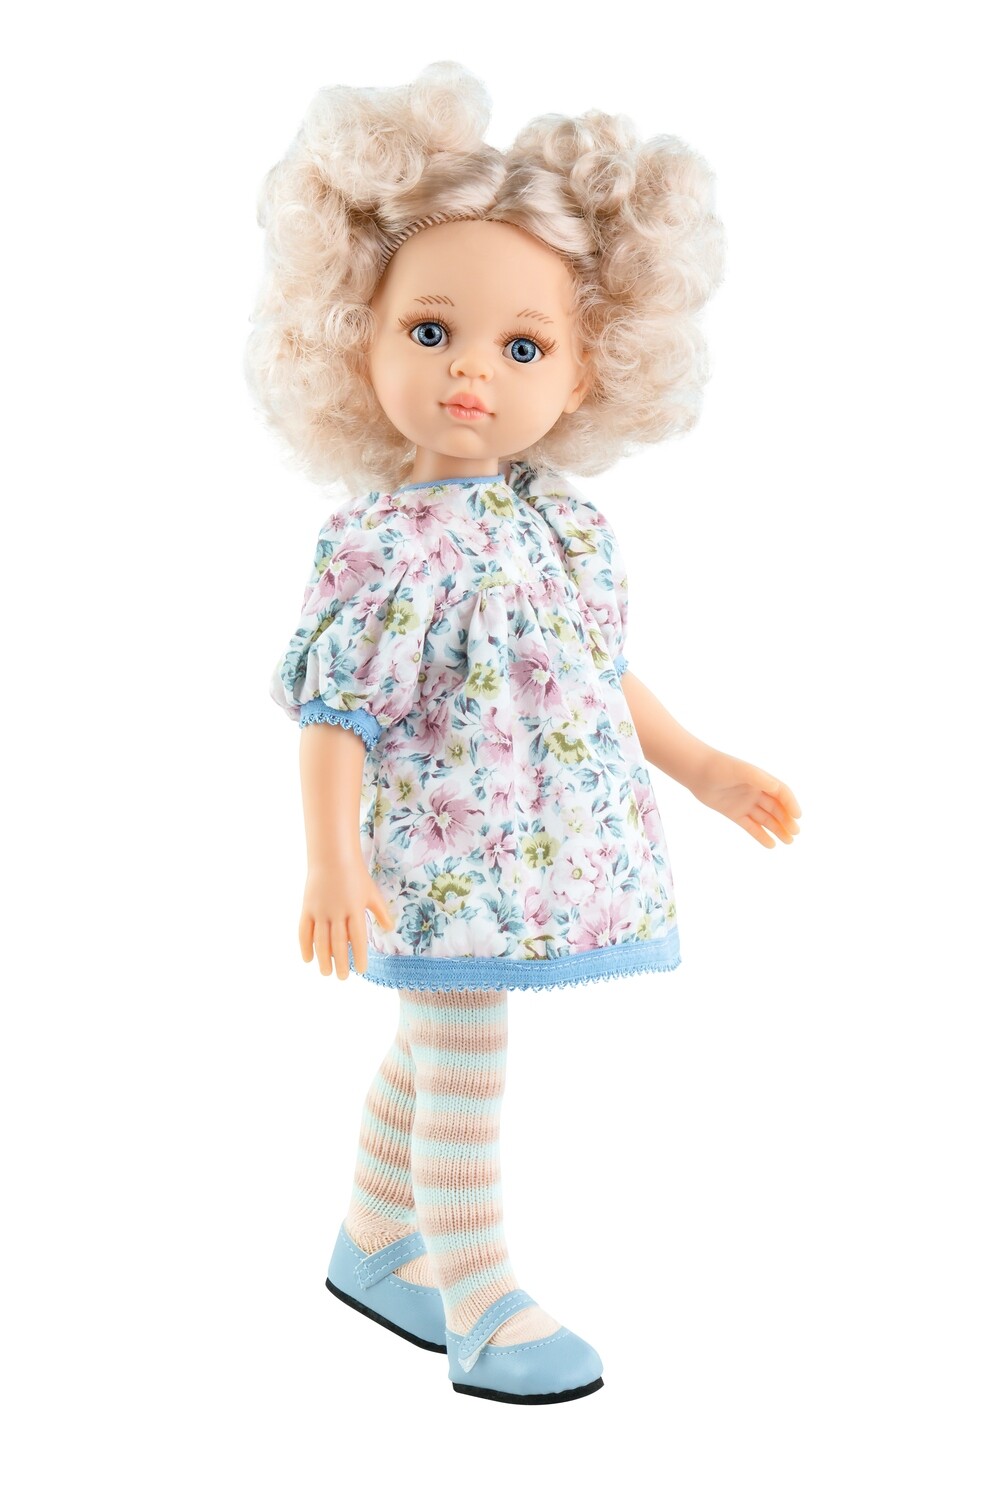 Кукла Мари Пилар, Paola Reina Паола Рейна (в фабричном наряде), 34 см